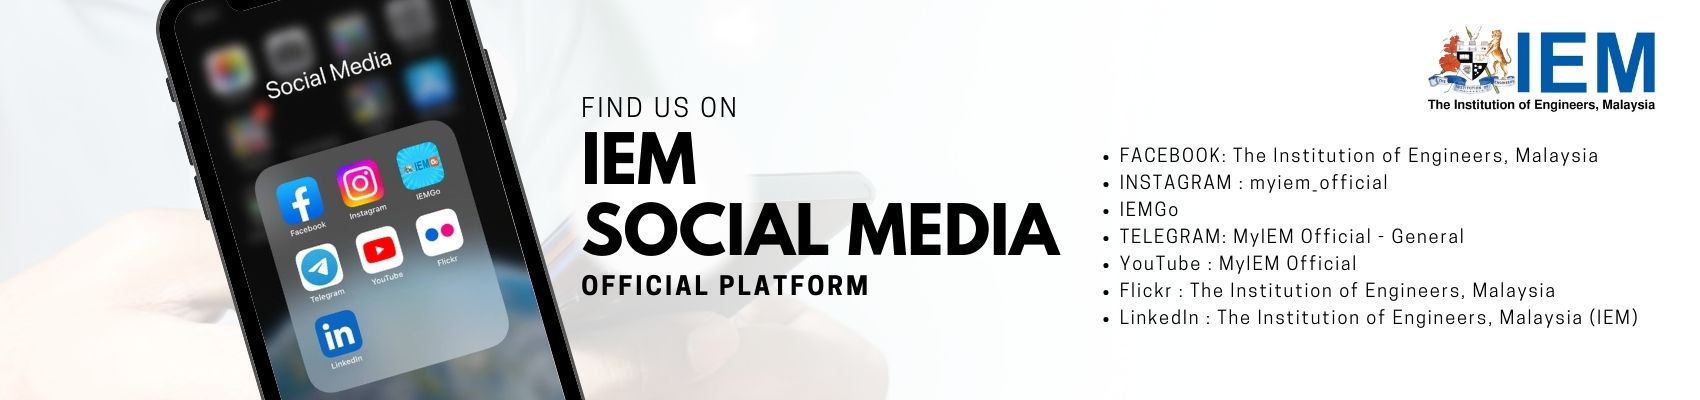 IEM Social Media - Official Platform